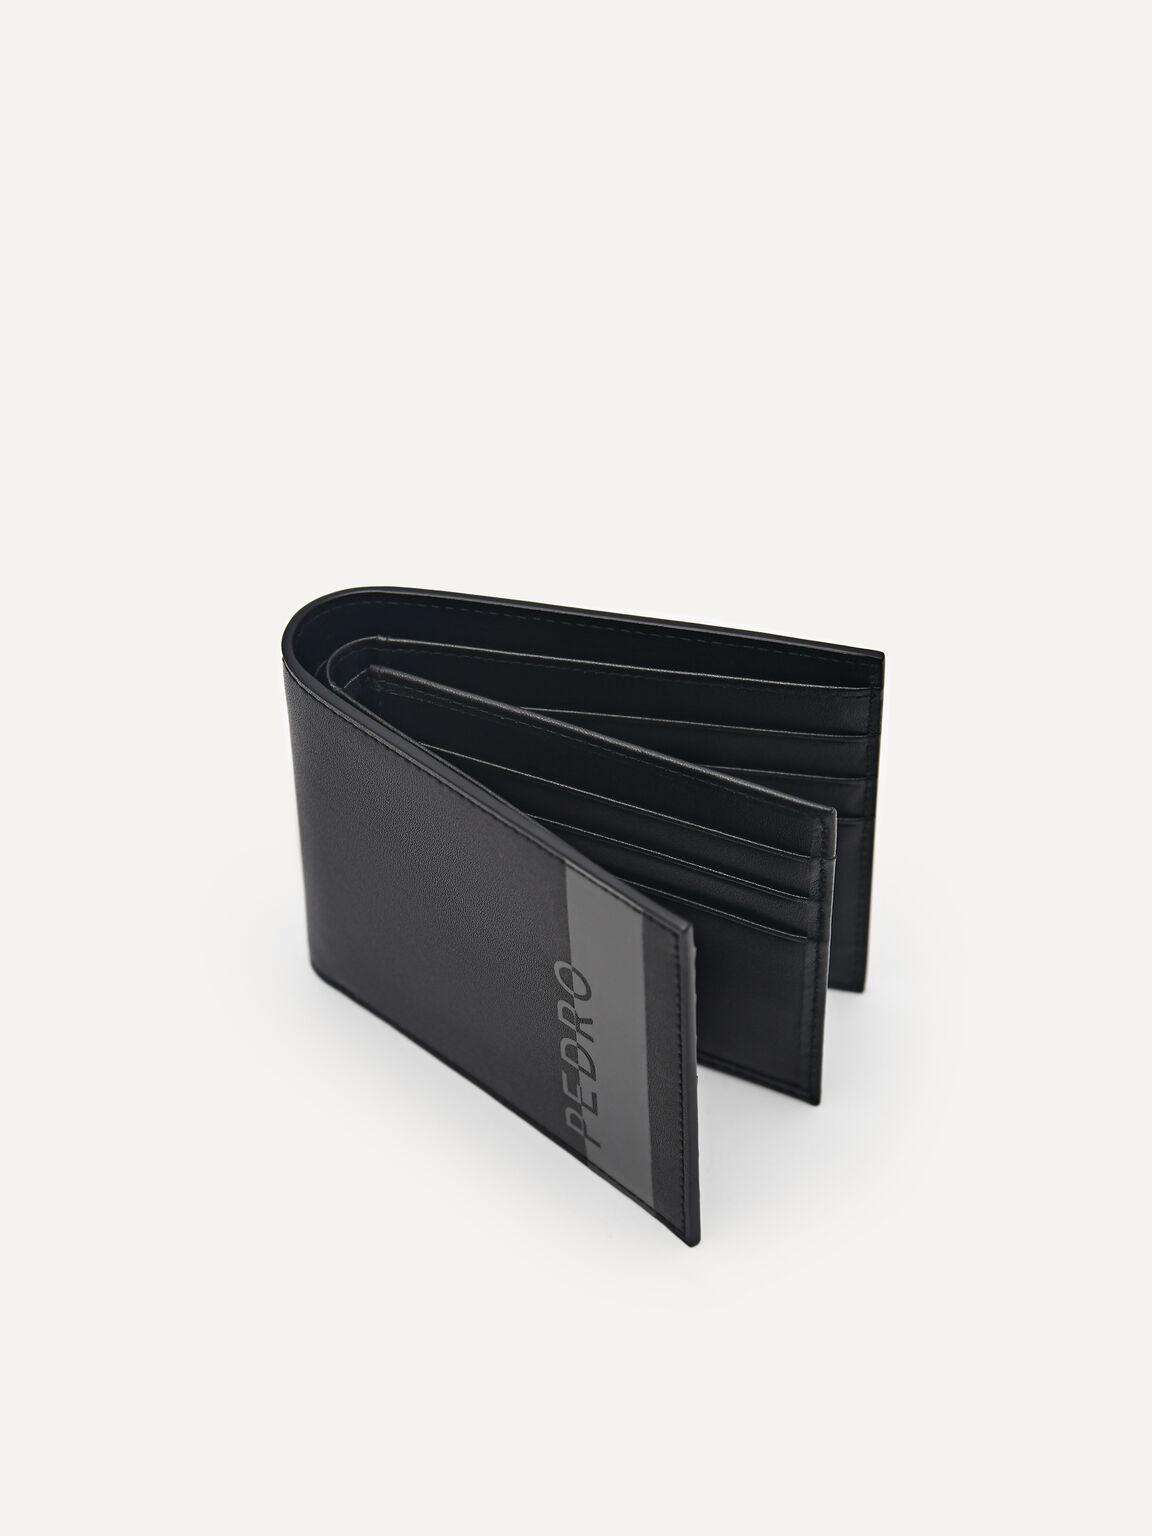 Leather Bi-Fold Flip Wallet, Black